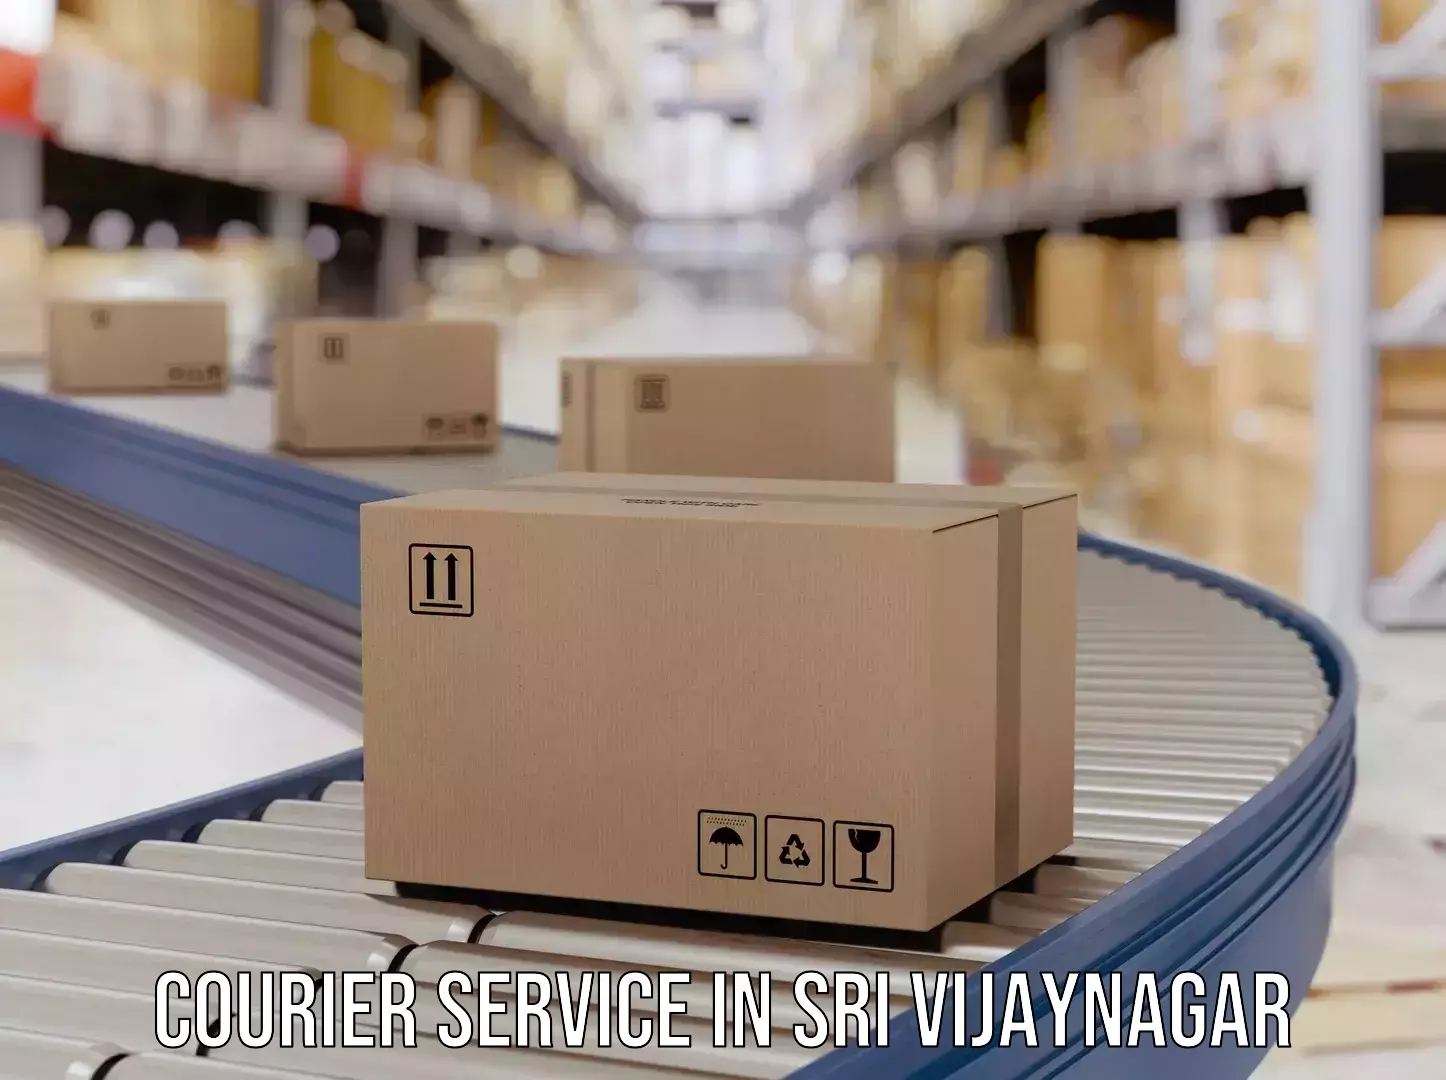 Subscription-based courier in Sri Vijaynagar